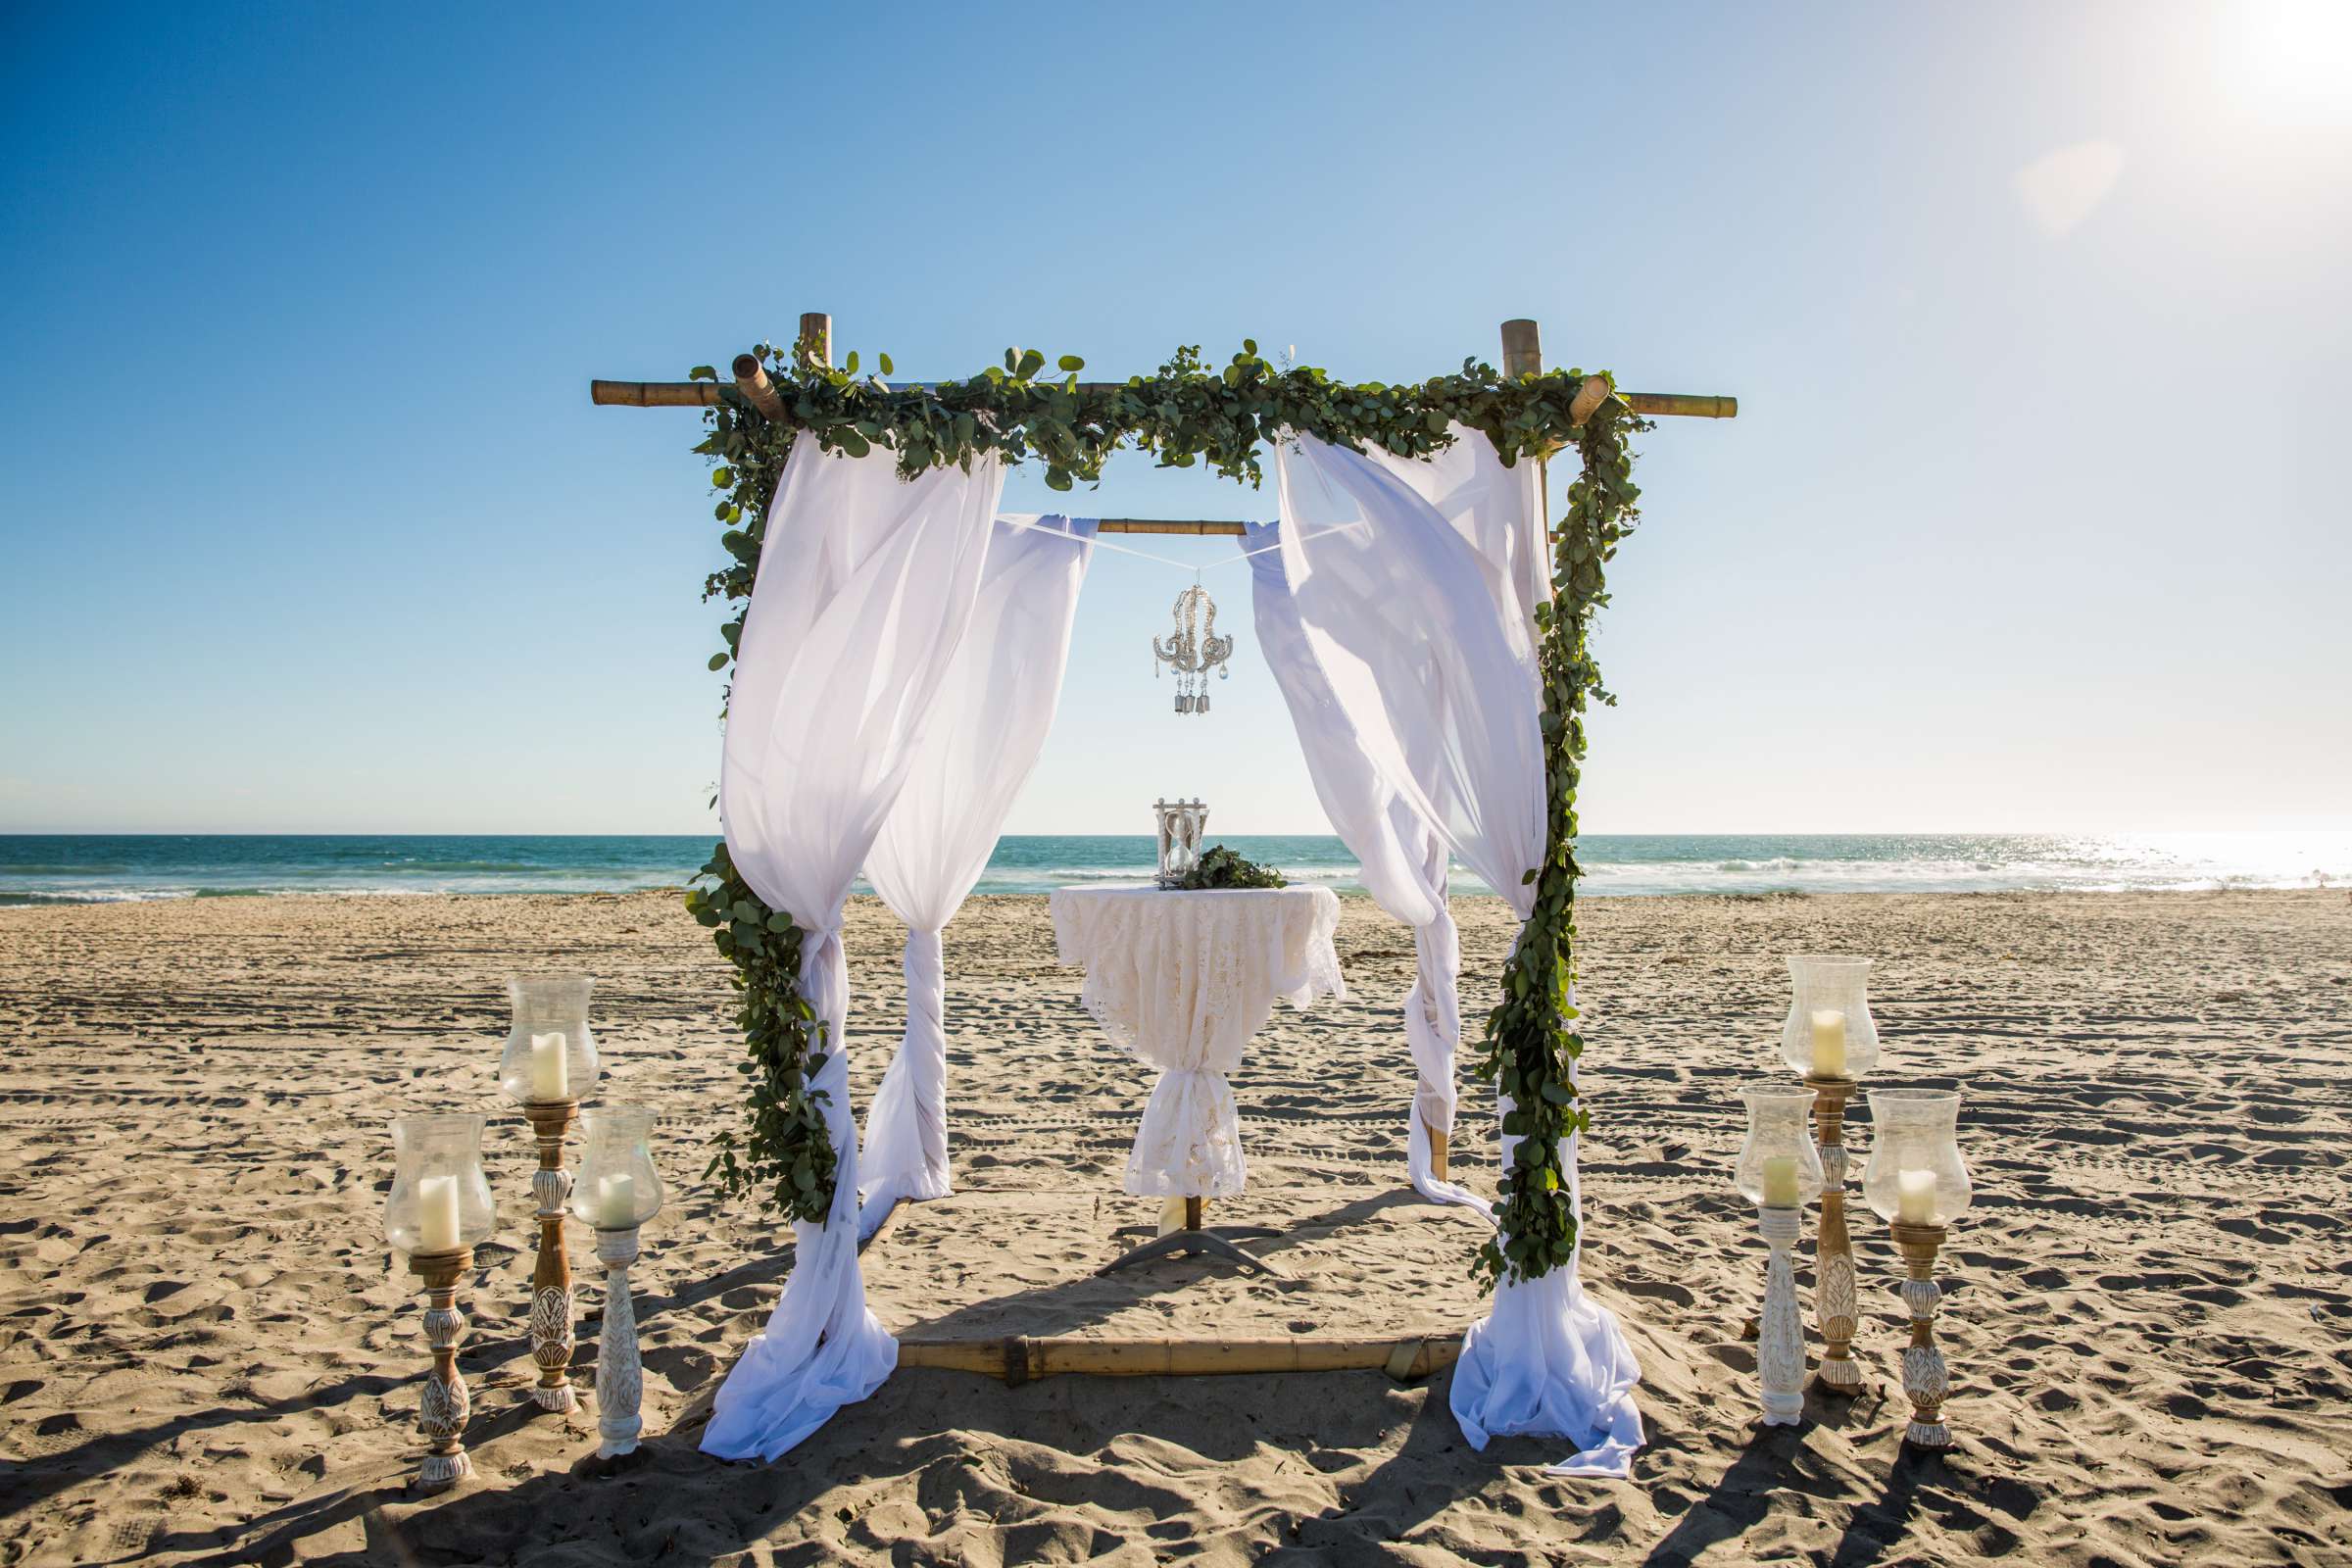 Del Mar Beach Resort Wedding coordinated by La Casa Del Mar, Alisa and Carlos Wedding Photo #380879 by True Photography